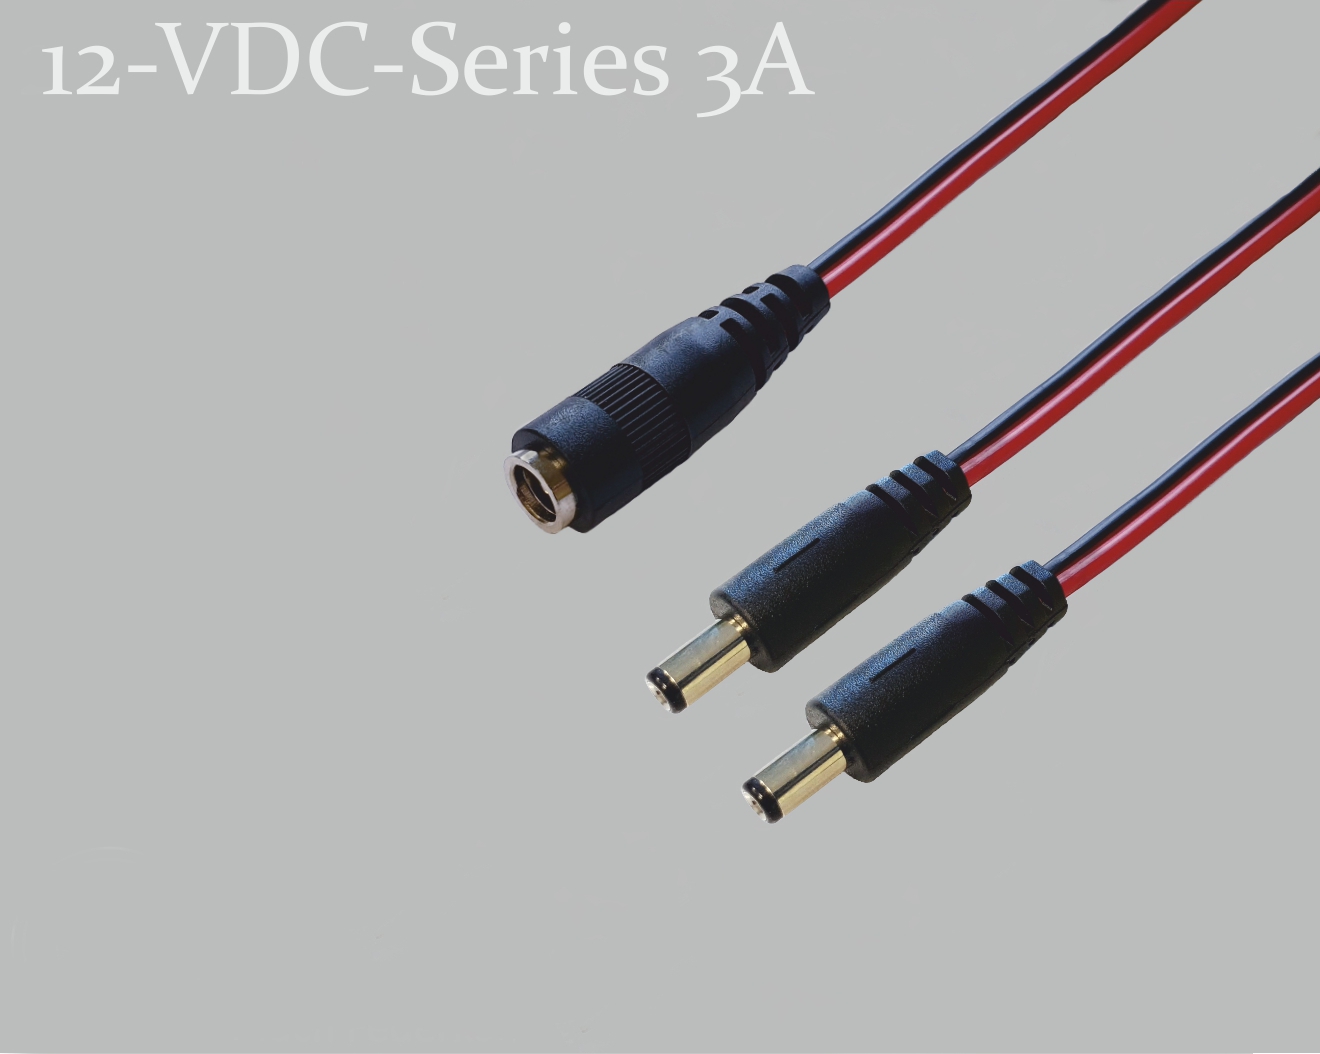 12-VDC-Series 3A, DC-Verteiler 1x DC-Kupplung auf 2x DC-Stecker mit Federkontakt,  2,5x5,5mm, Flachkabel 2x0,4mm², rot/schwarz, 0,3m